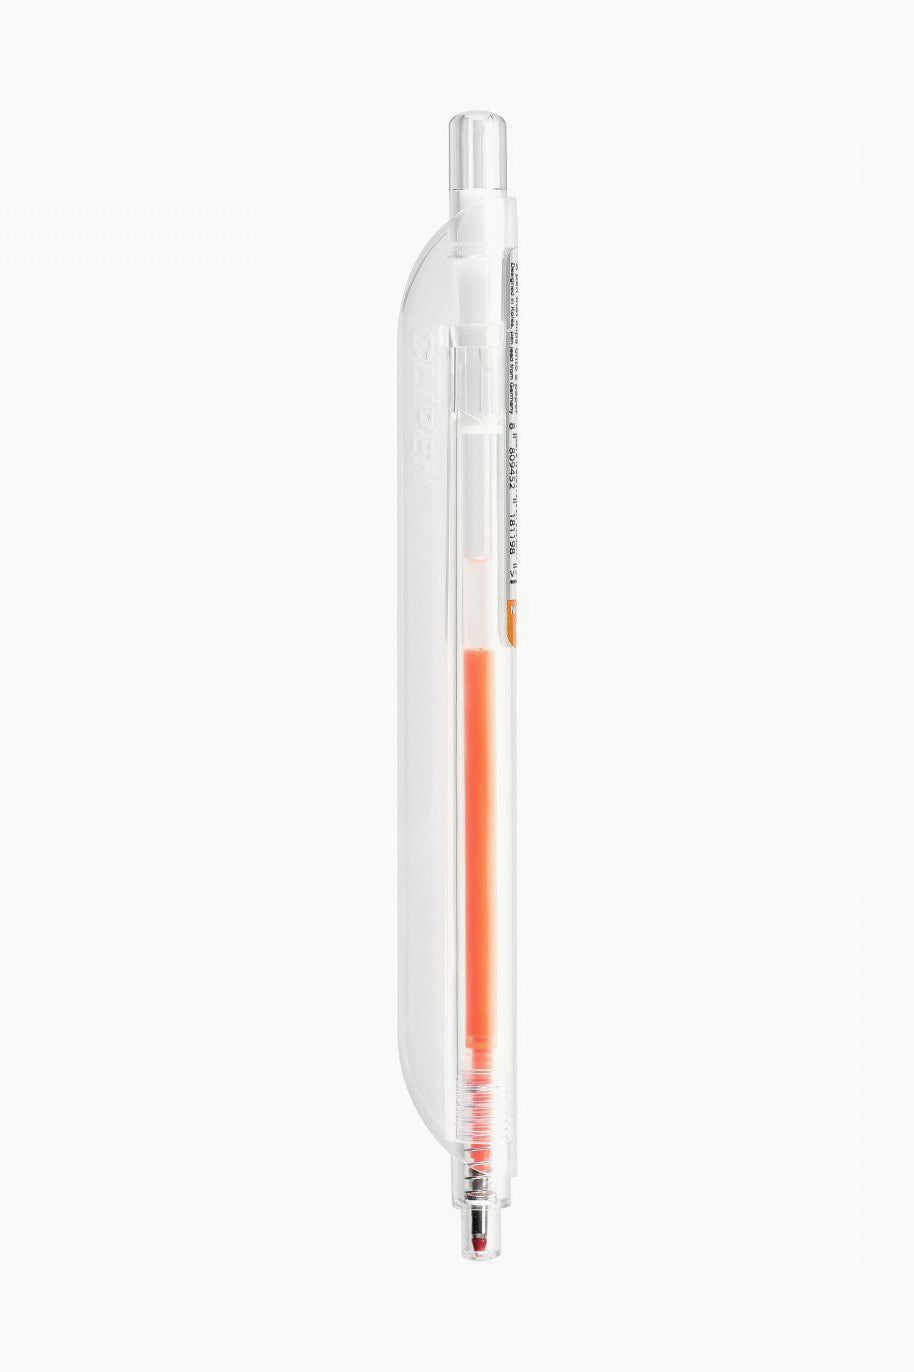 Clipen neon orange-Clipen-[interior]-[design]-KIOSK48TH